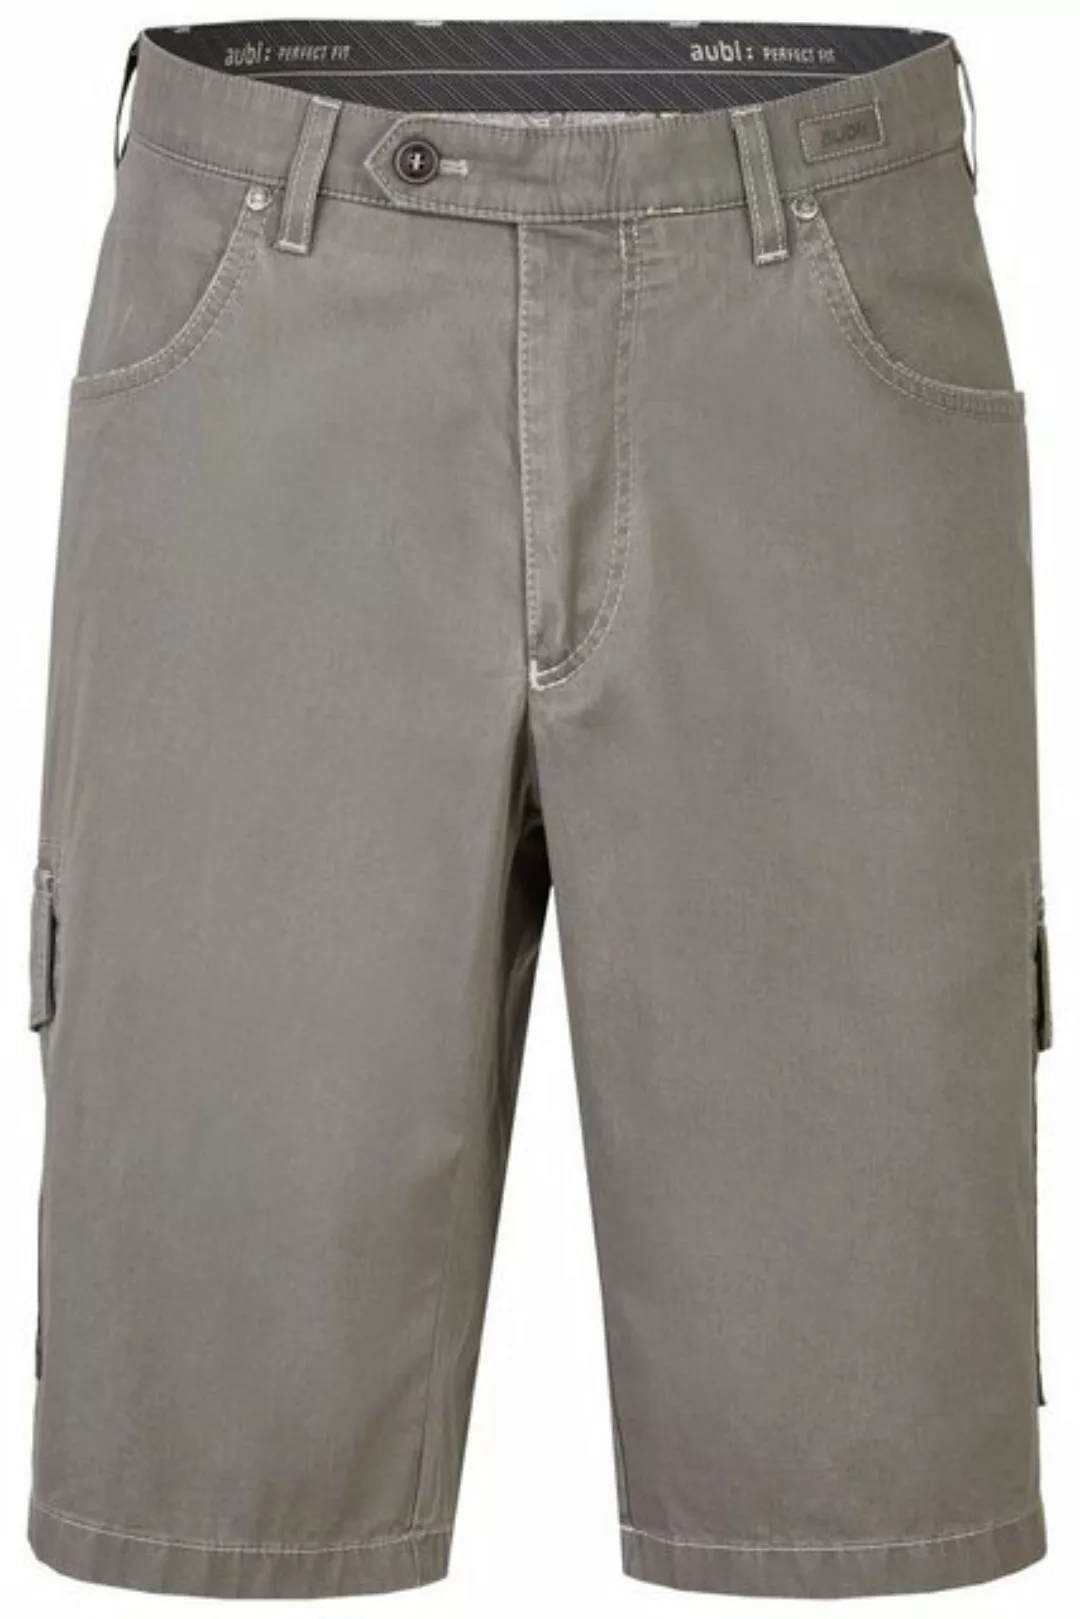 aubi: Stoffhose aubi Perfect Fit Herren Shorts Paisley High Flex Modell 616 günstig online kaufen